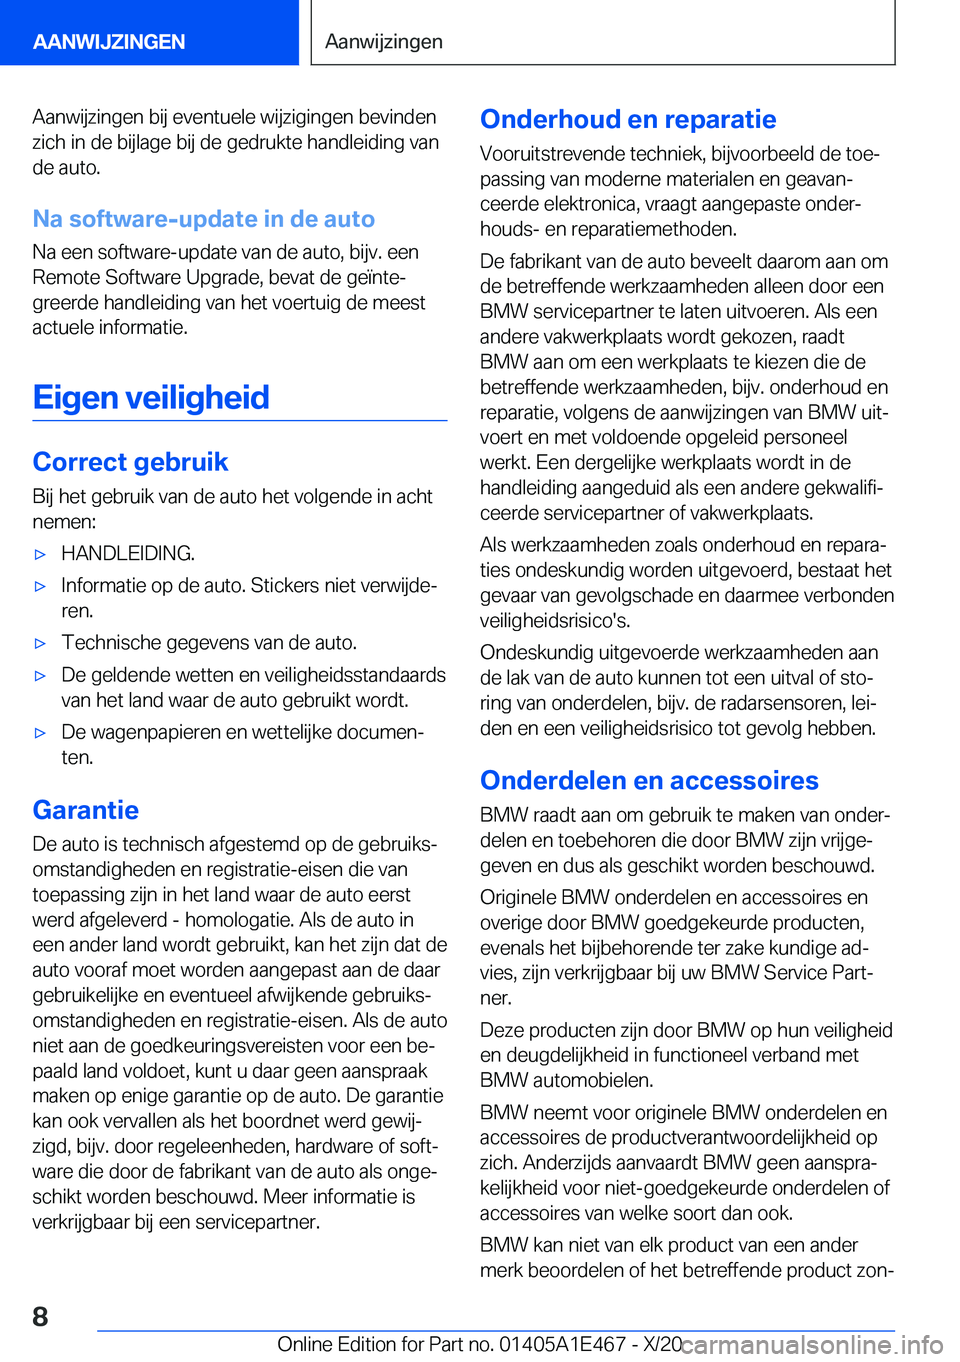 BMW M3 2021  Instructieboekjes (in Dutch) �A�a�n�w�i�j�z�i�n�g�e�n��b�i�j��e�v�e�n�t�u�e�l�e��w�i�j�z�i�g�i�n�g�e�n��b�e�v�i�n�d�e�n�z�i�c�h��i�n��d�e��b�i�j�l�a�g�e��b�i�j��d�e��g�e�d�r�u�k�t�e��h�a�n�d�l�e�i�d�i�n�g��v�a�n
�d�e�